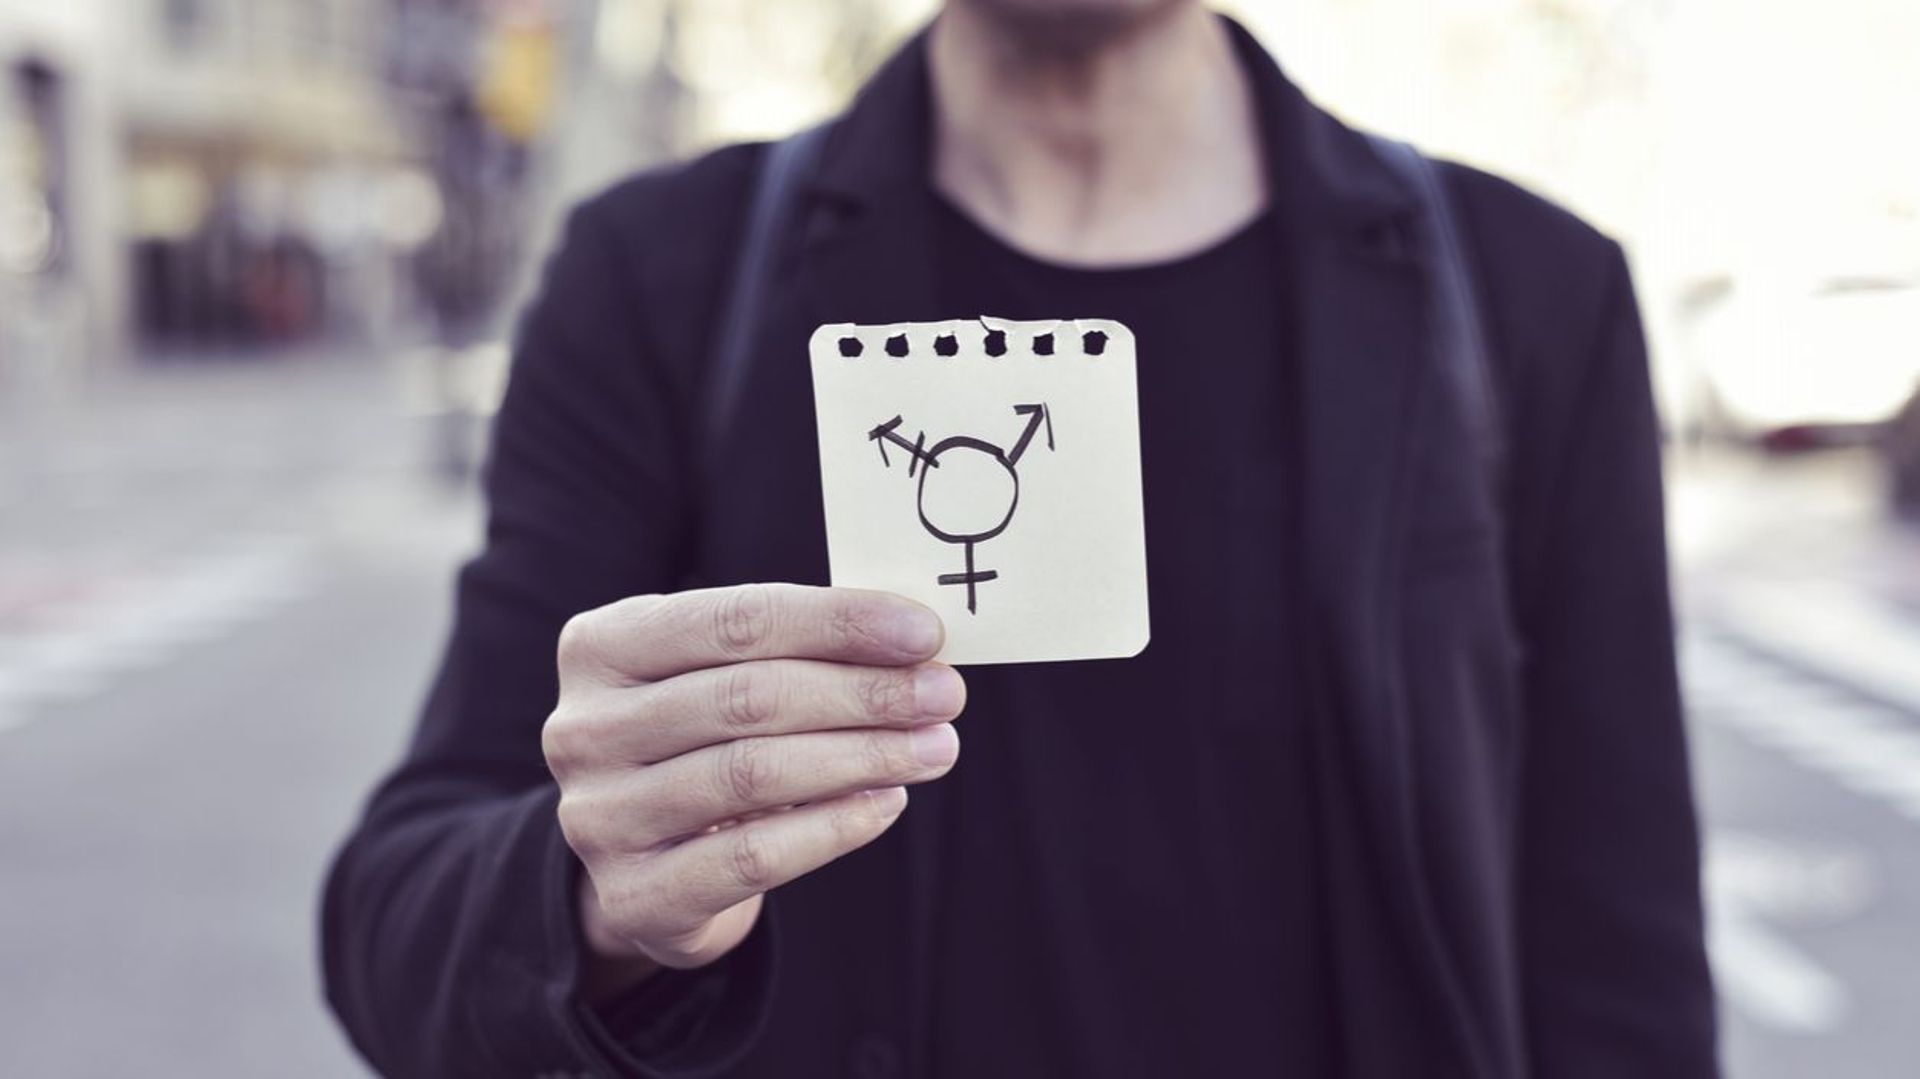 “La transphobie tue“… Le témoignage fort d’une youtubeuse transgenre